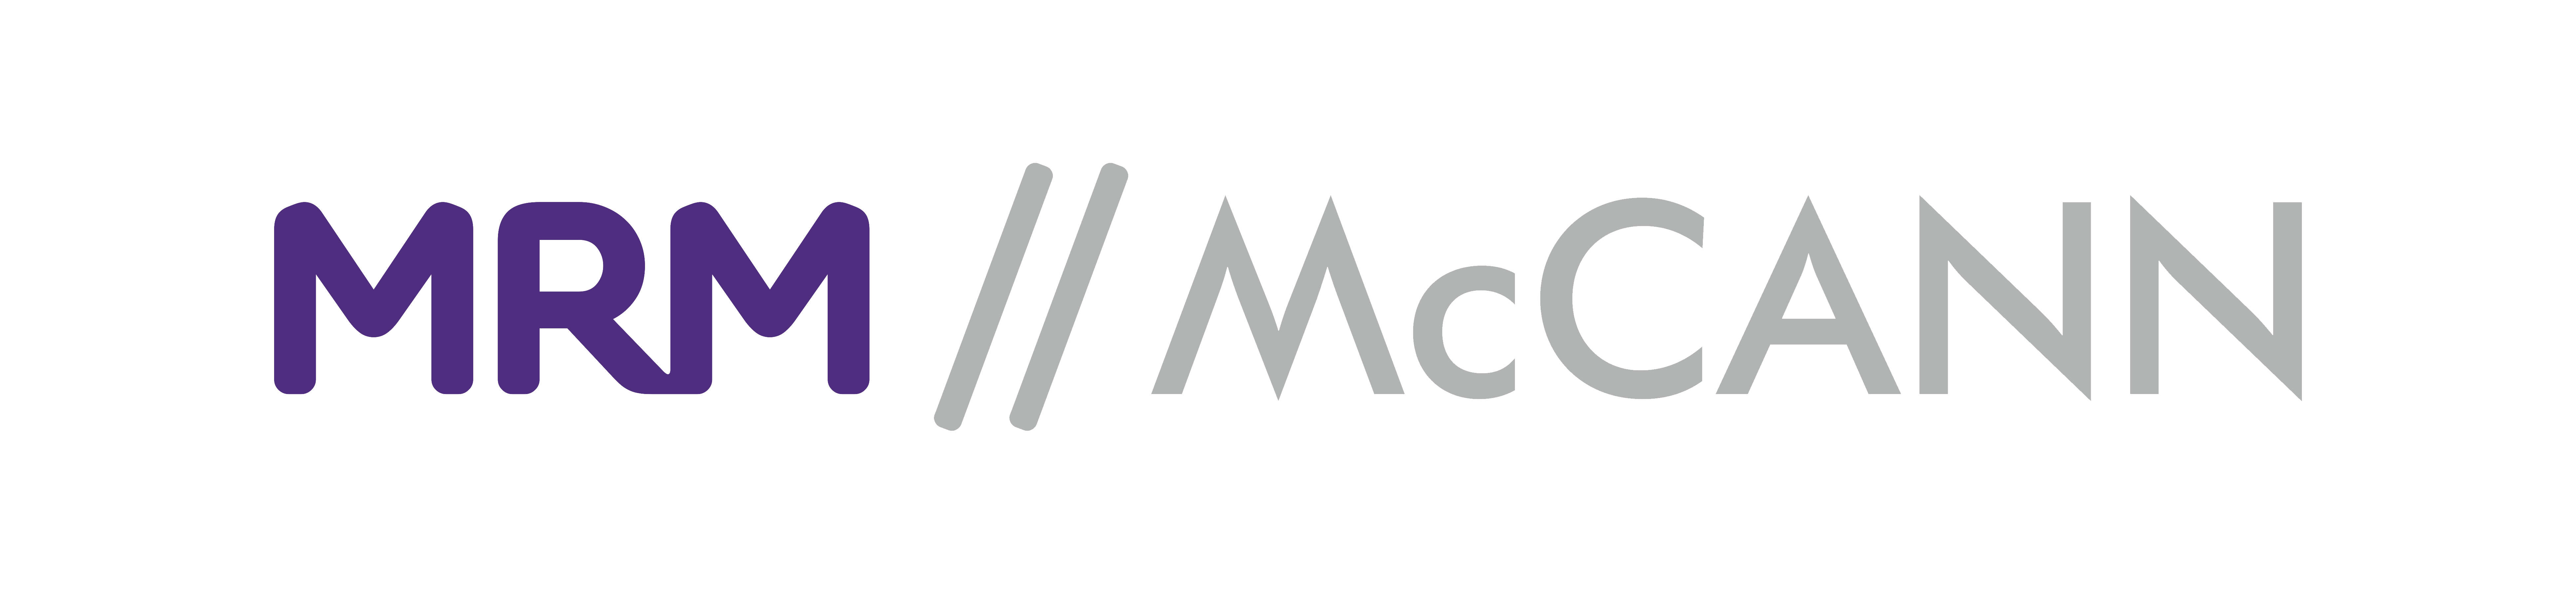 mrmmcann-logo